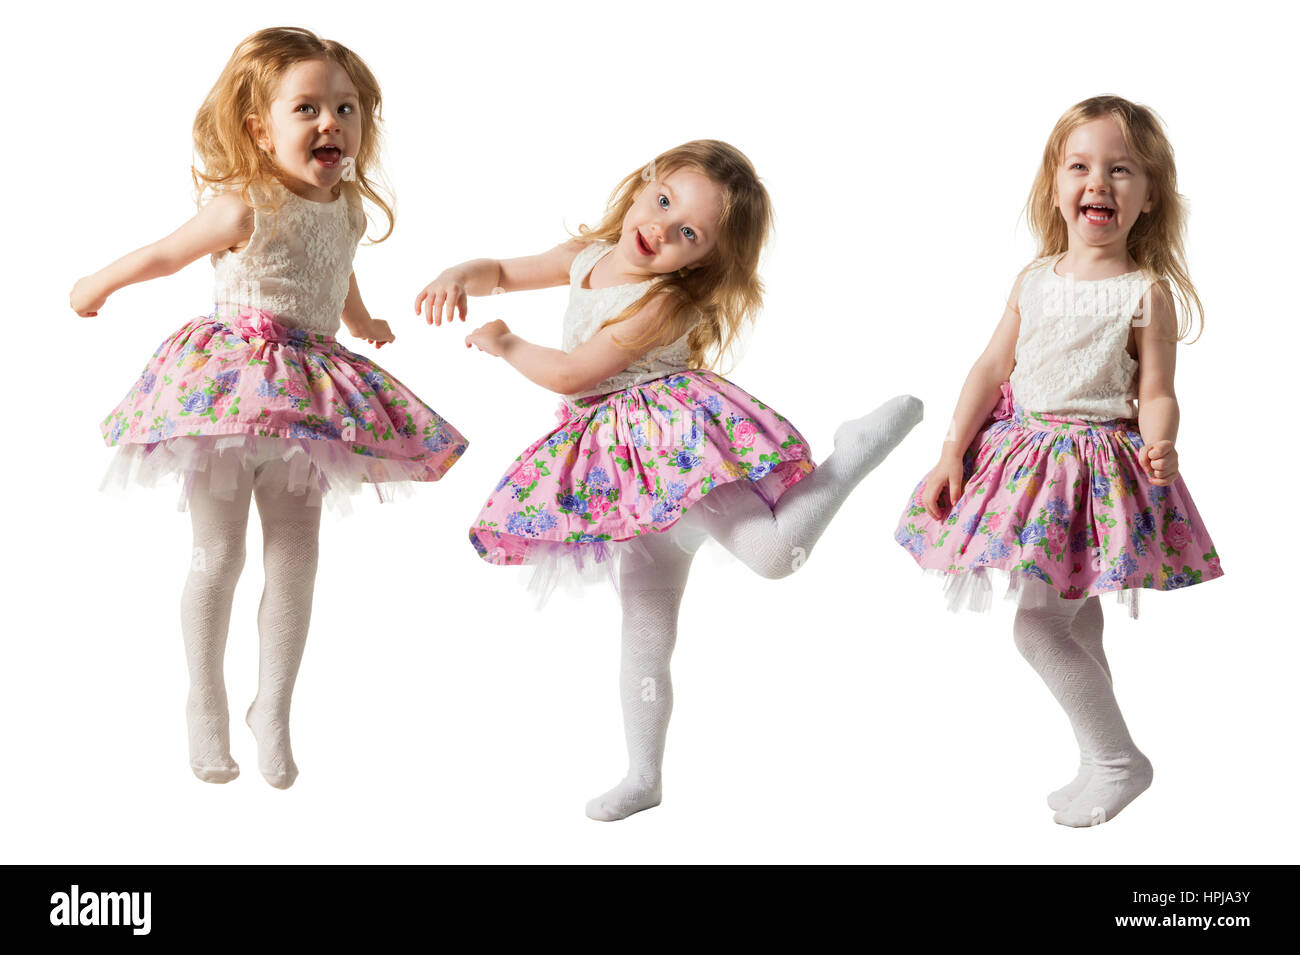 Carino ragazzina salta con gioia isolati su sfondo bianco Foto Stock